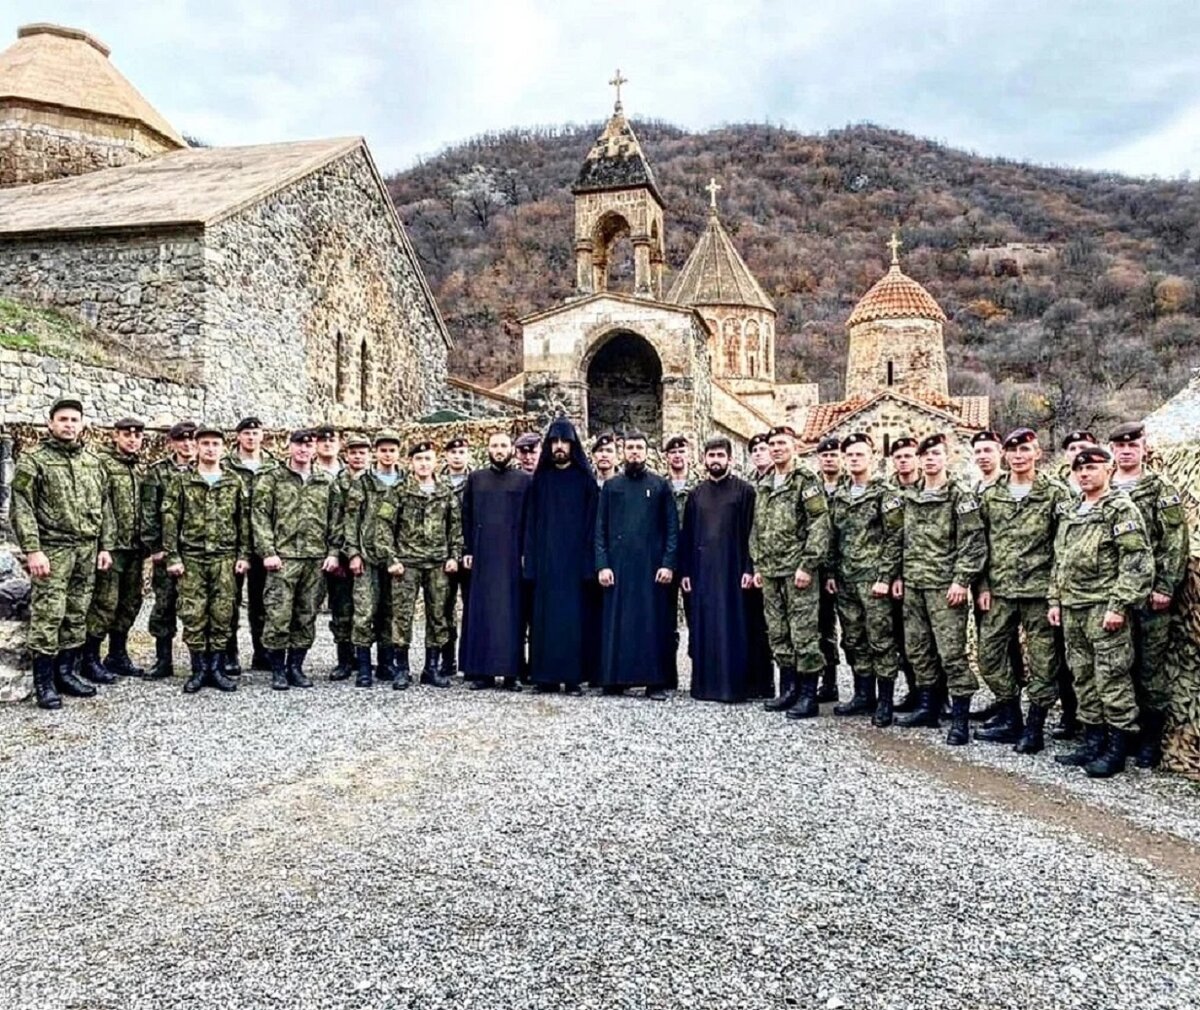 Российские миротворческие силы охраняют армянский монастырь Дадиванк от азербайджанских варваров и вандалов. Фото из открытых источников сети Интернета.